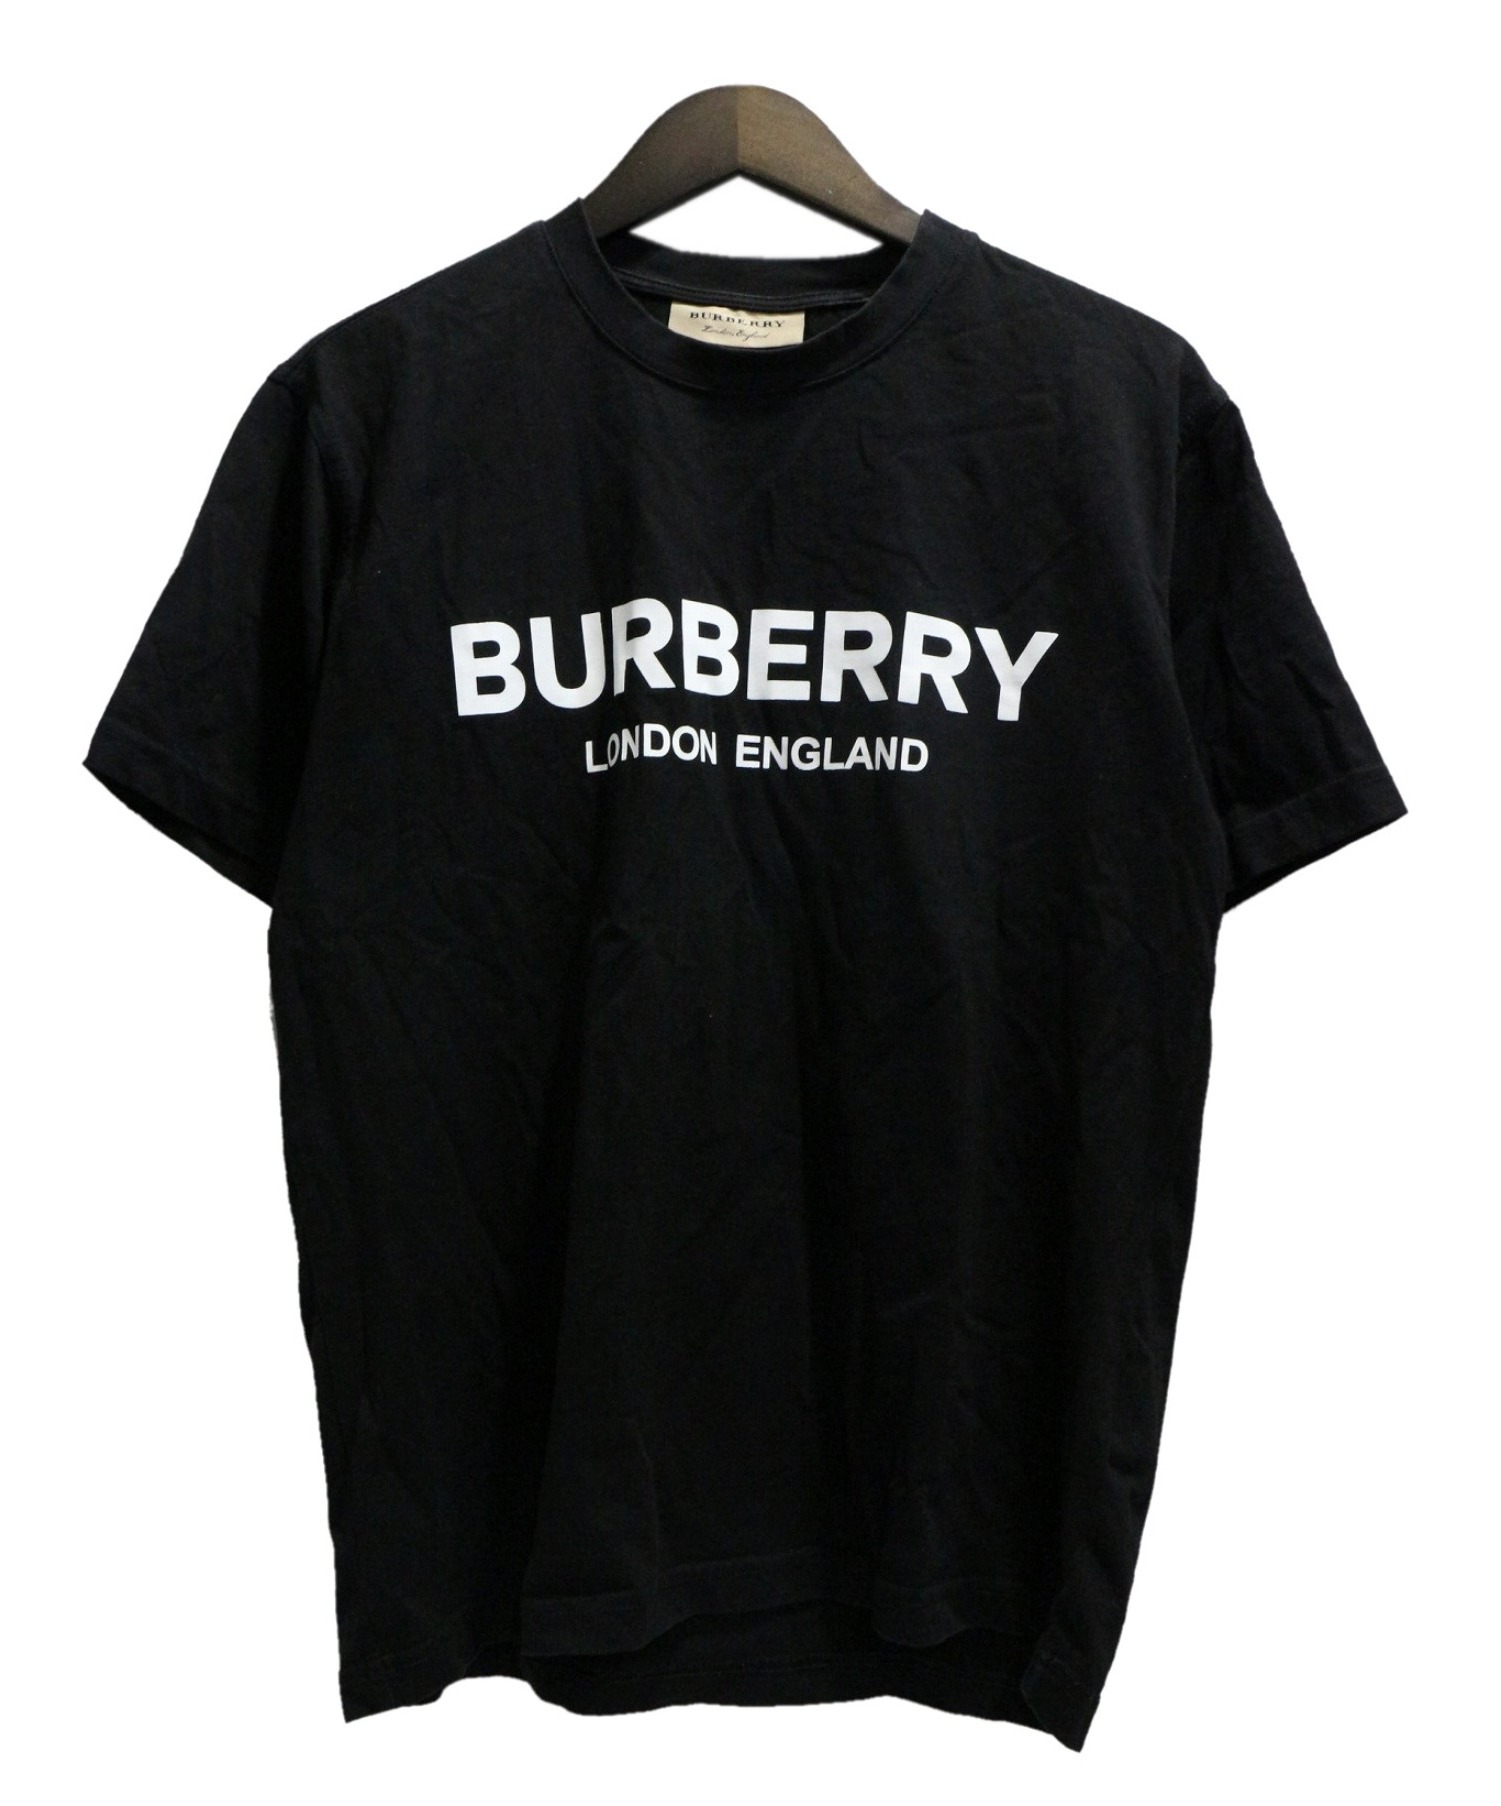 BURBERRY (バーバリー) ロゴプリントTシャツ ブラック サイズ:S